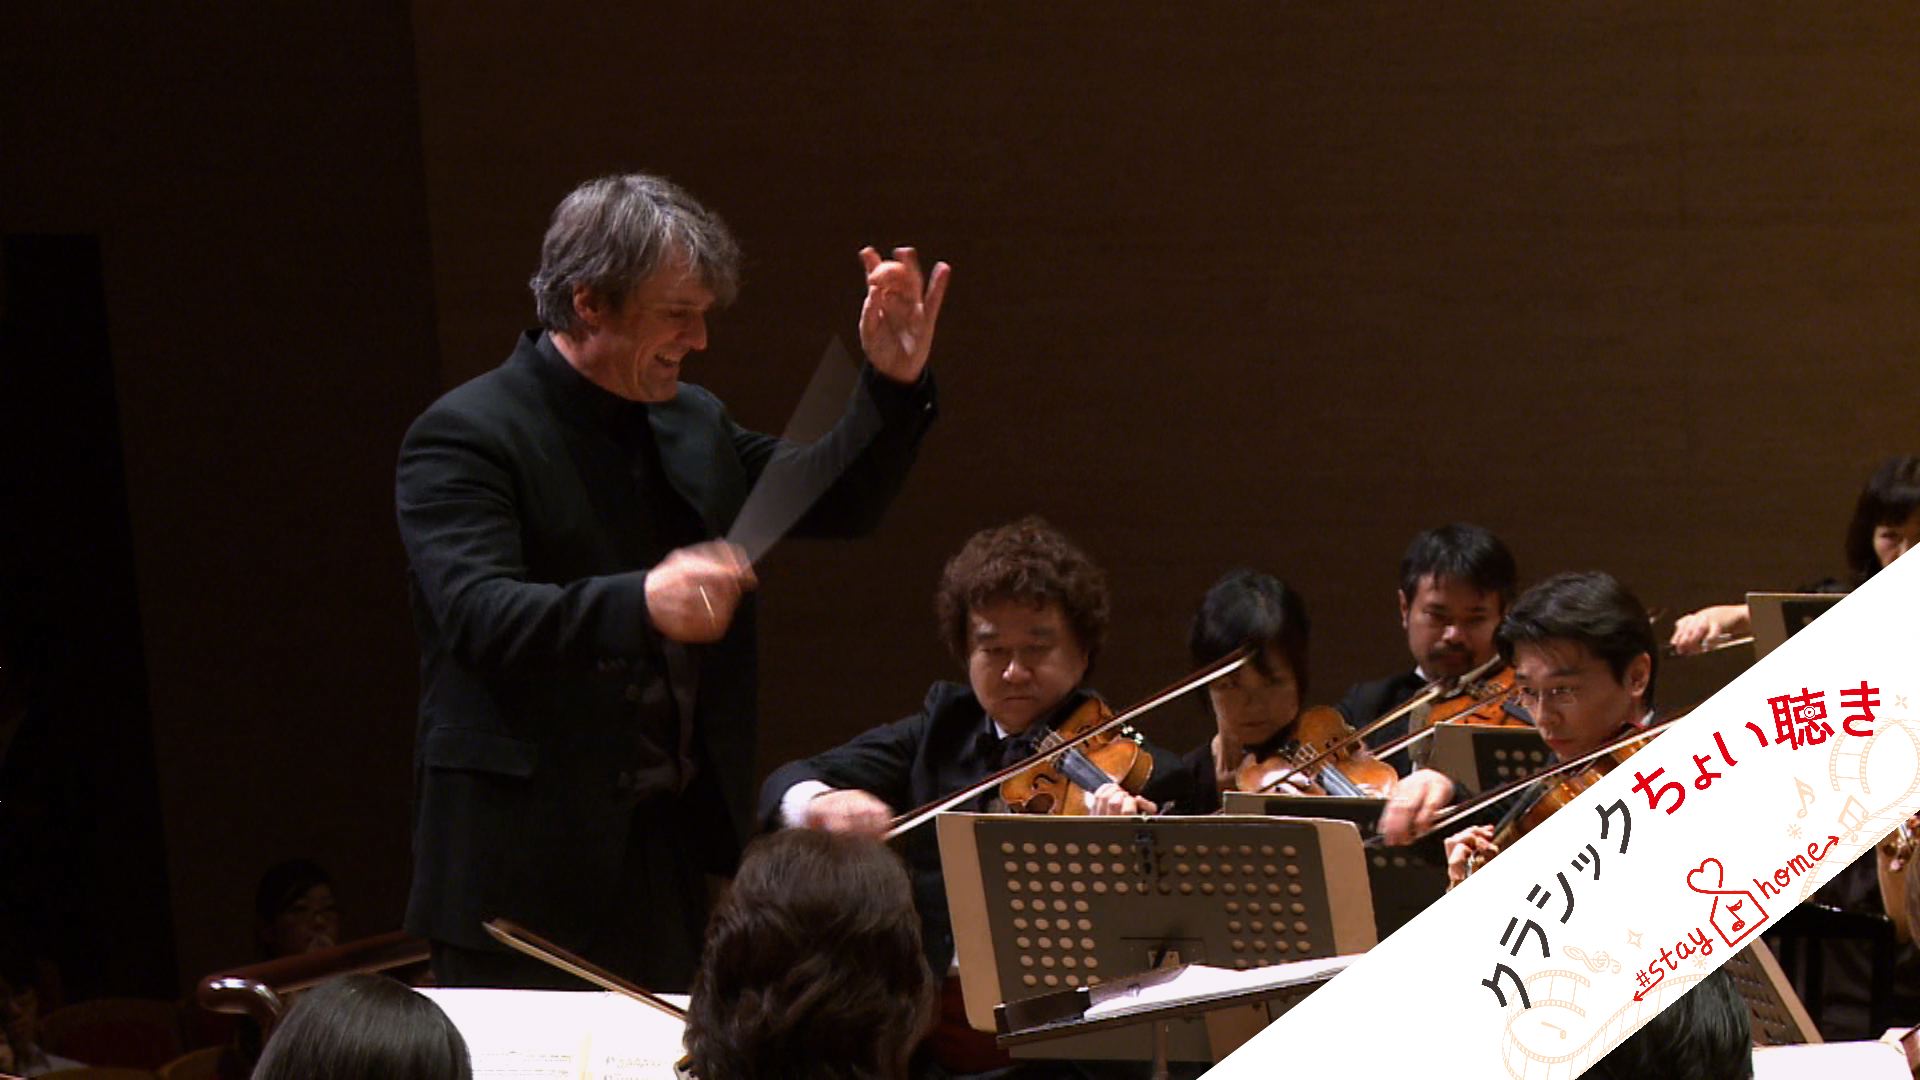 指揮：インゴ・メッツマッハー
新日本フィルハーモニー交響楽団
ベートーヴェン：交響曲第5番「運命」第3楽章より
Ingo Metzmacher, Conductor
New Japan Philharmonic
Beethoven:Symphony No. 5